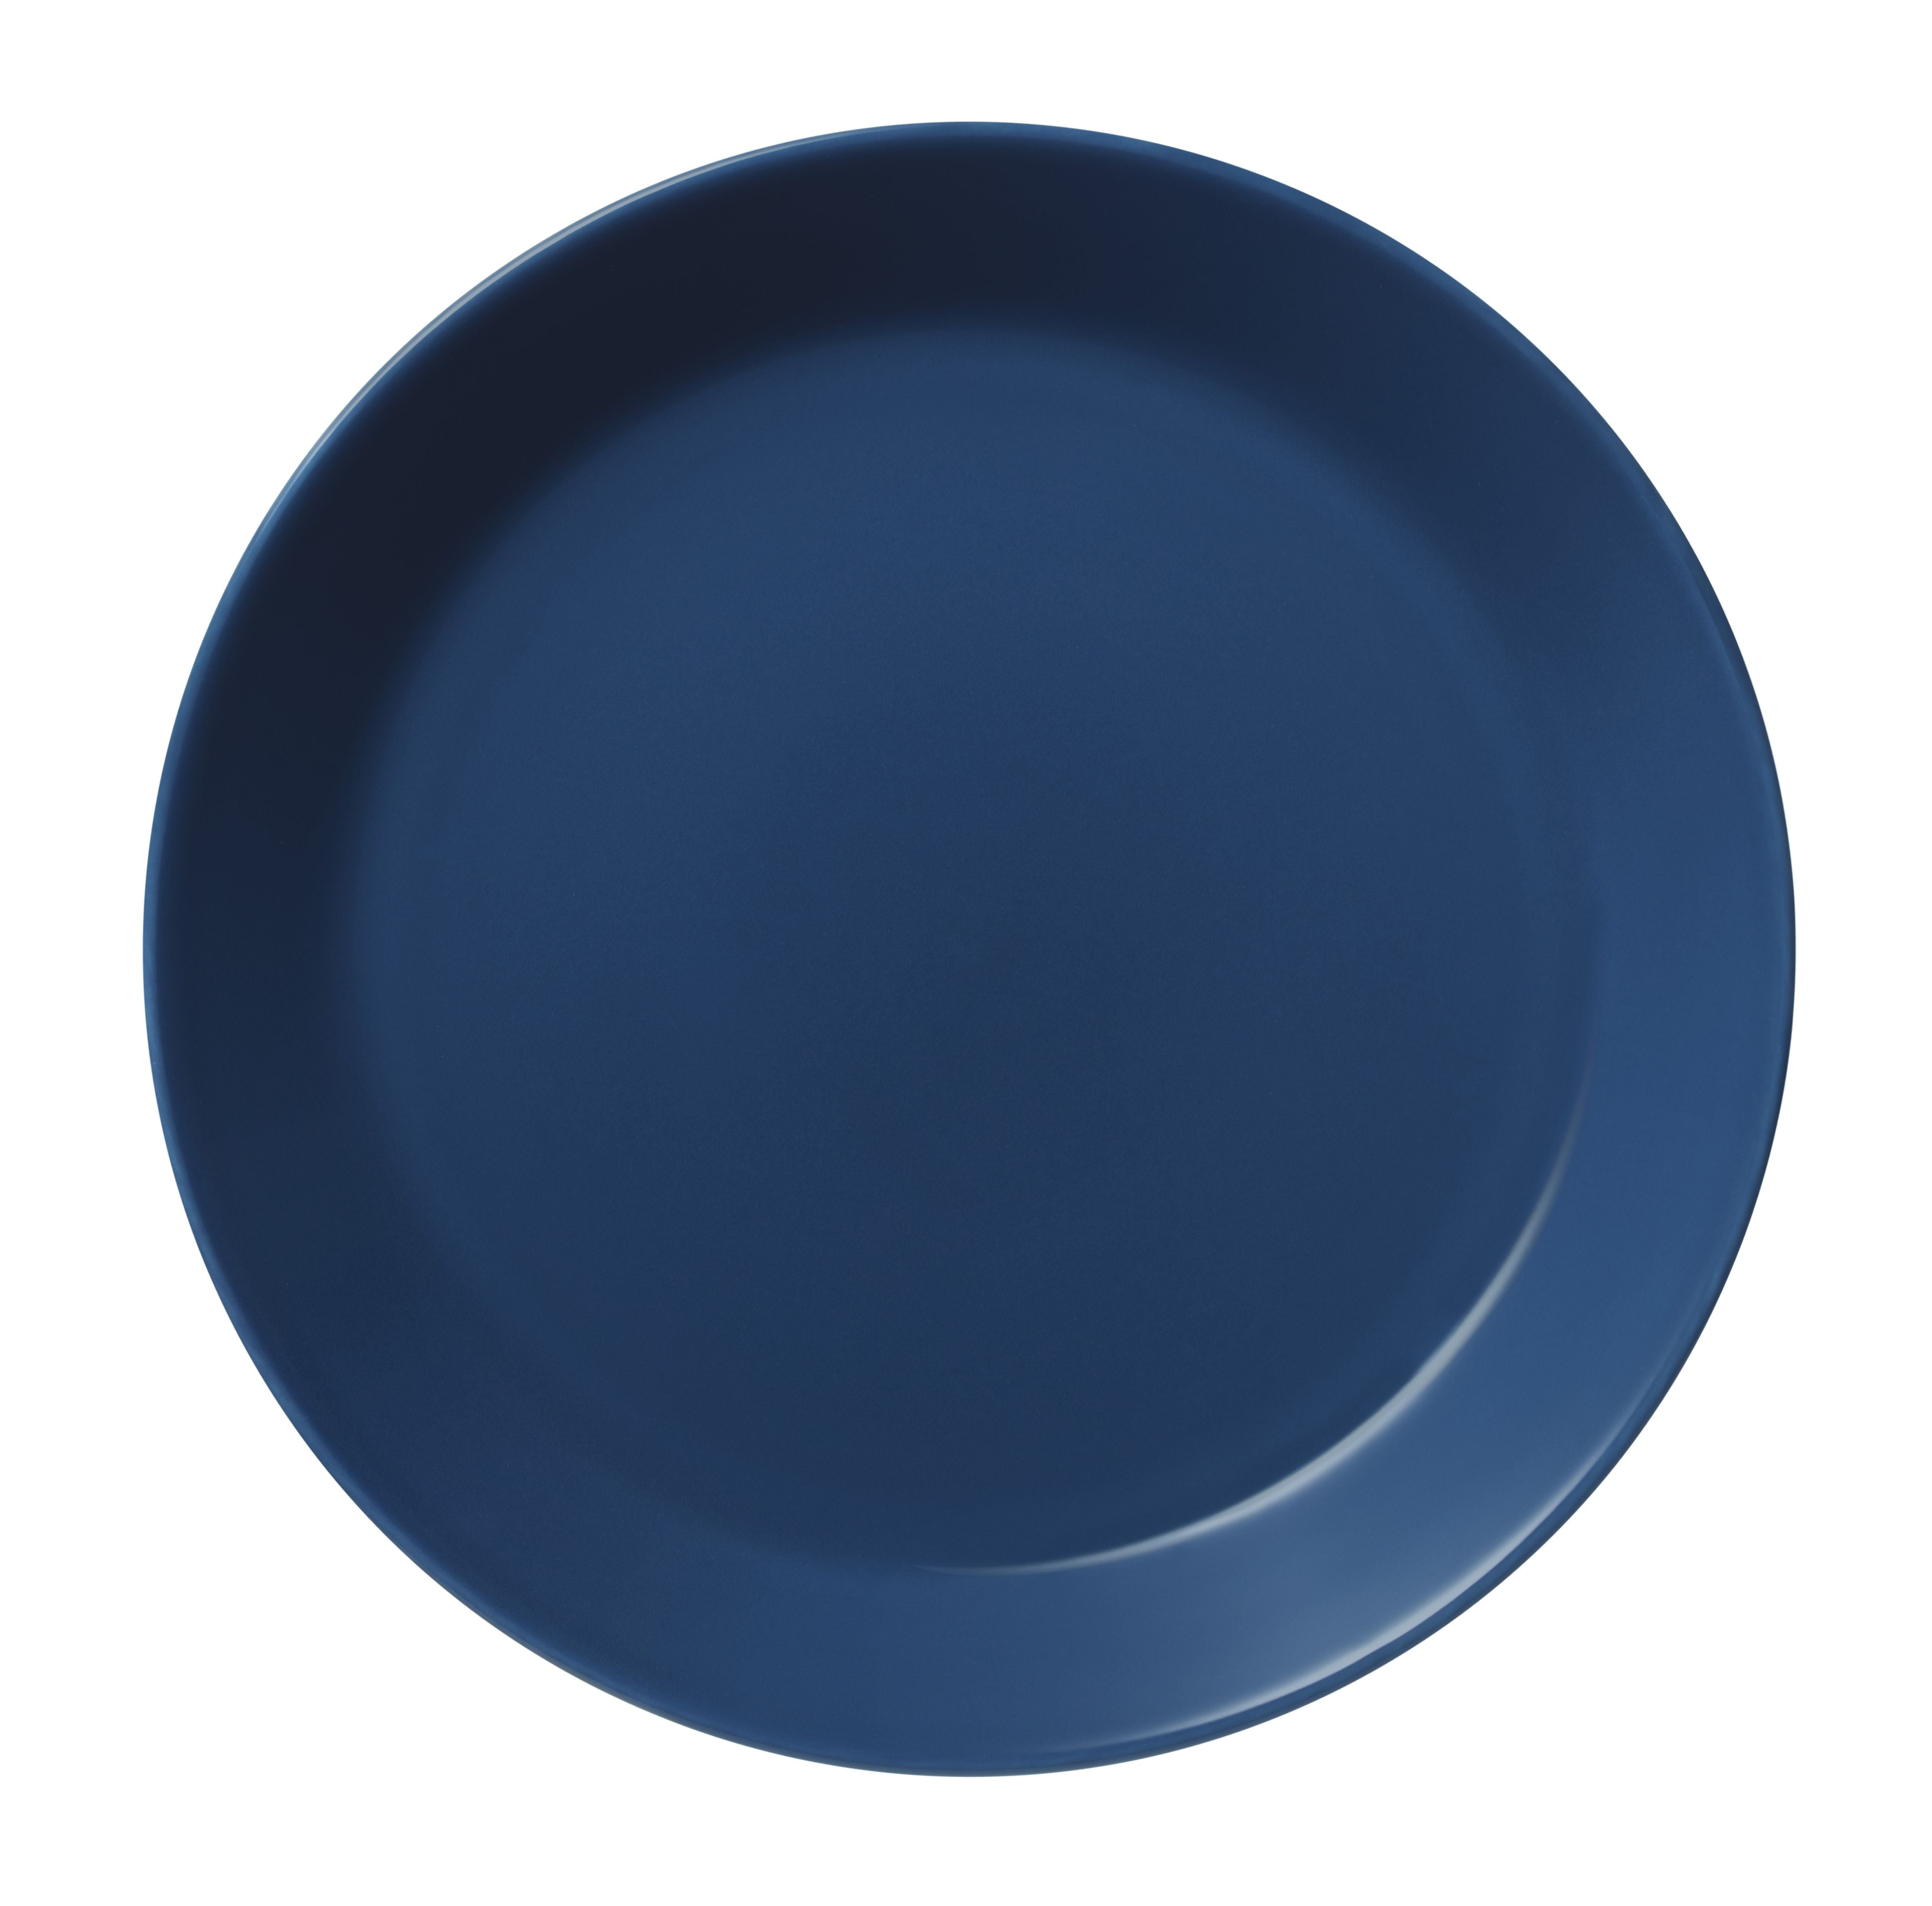 Iittala Teema Plate 23cm, Vintage Blue